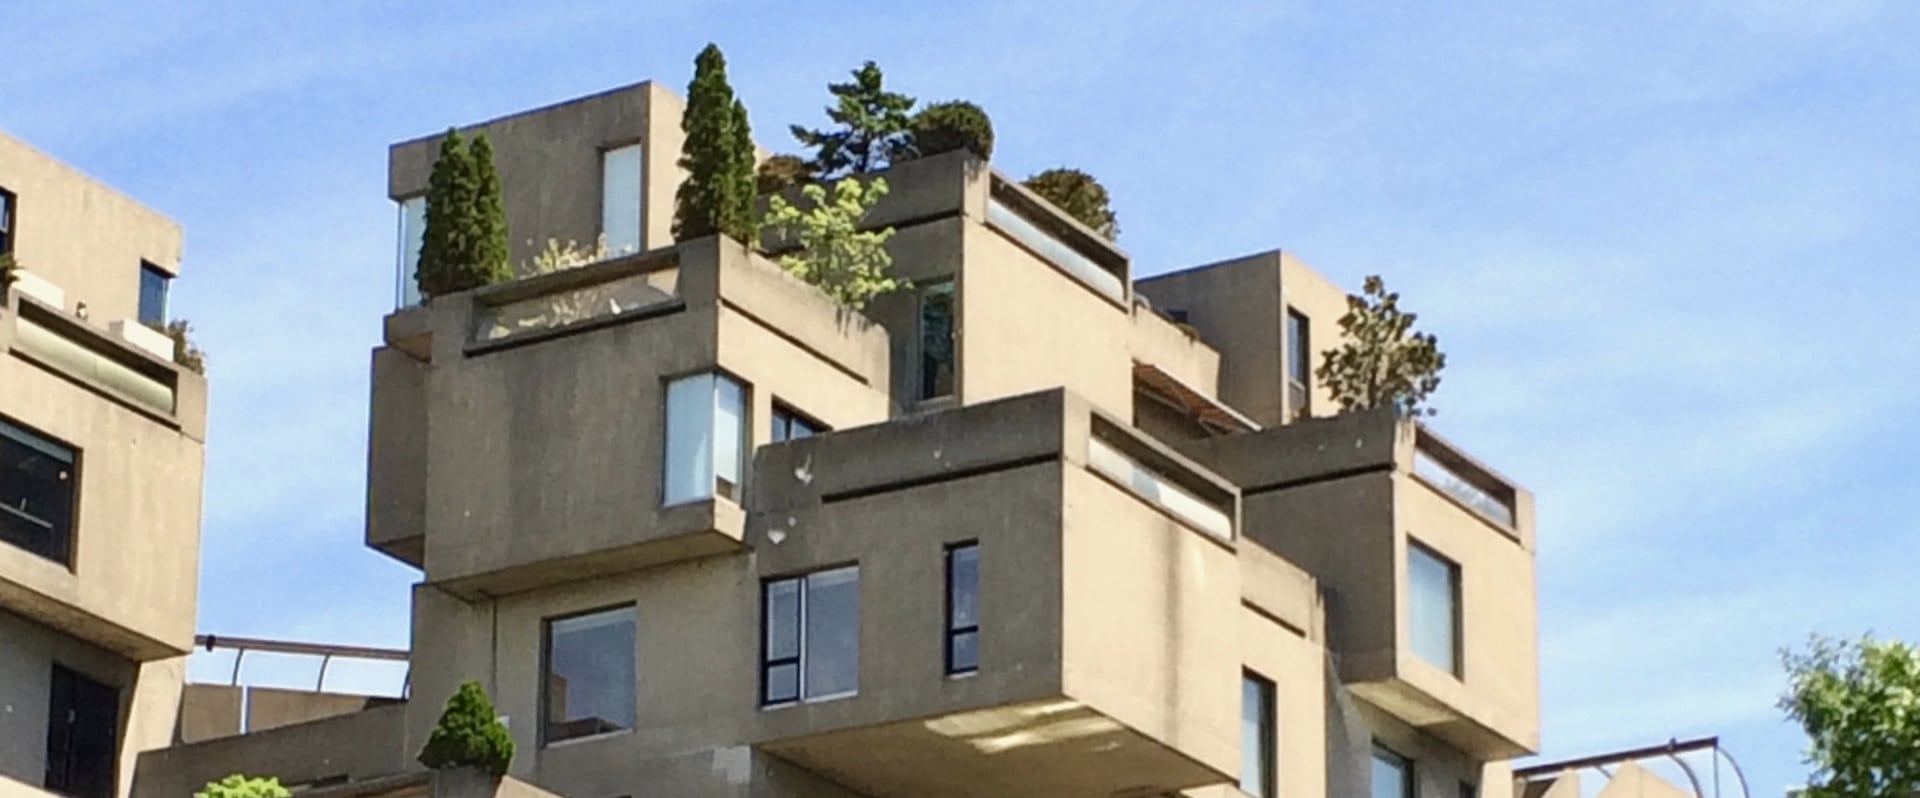 Photo de l’immeuble beige Habitat 67 sur fond de ciel bleu avec arbres verts sur les terrasses.